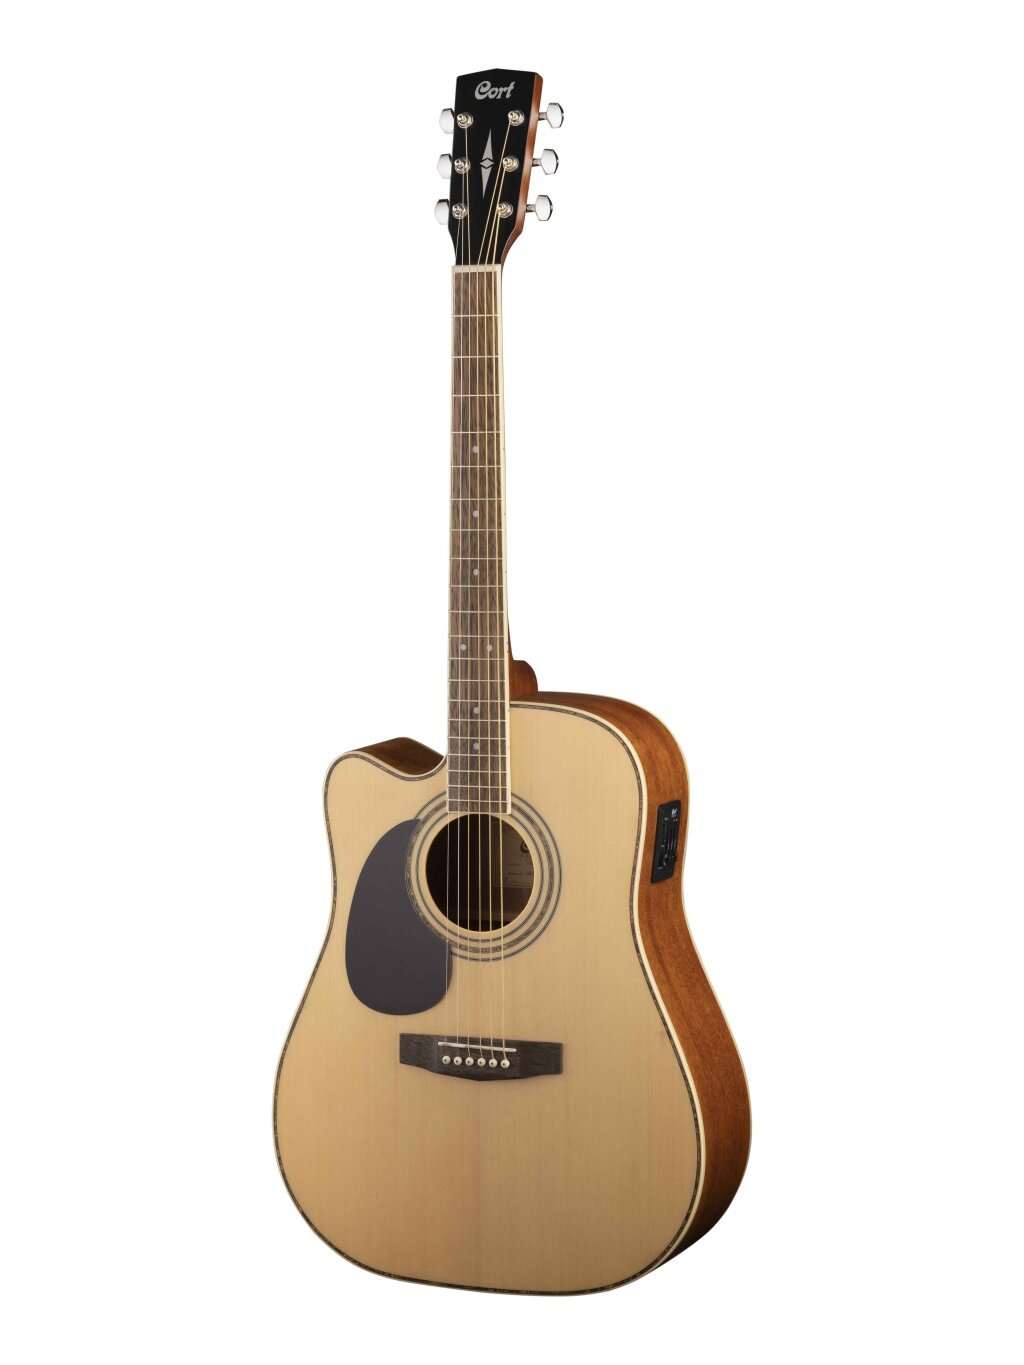 AD880CE-LH-NS Standard Series Электро-акустическая гитара леворукая с вырезом Cort